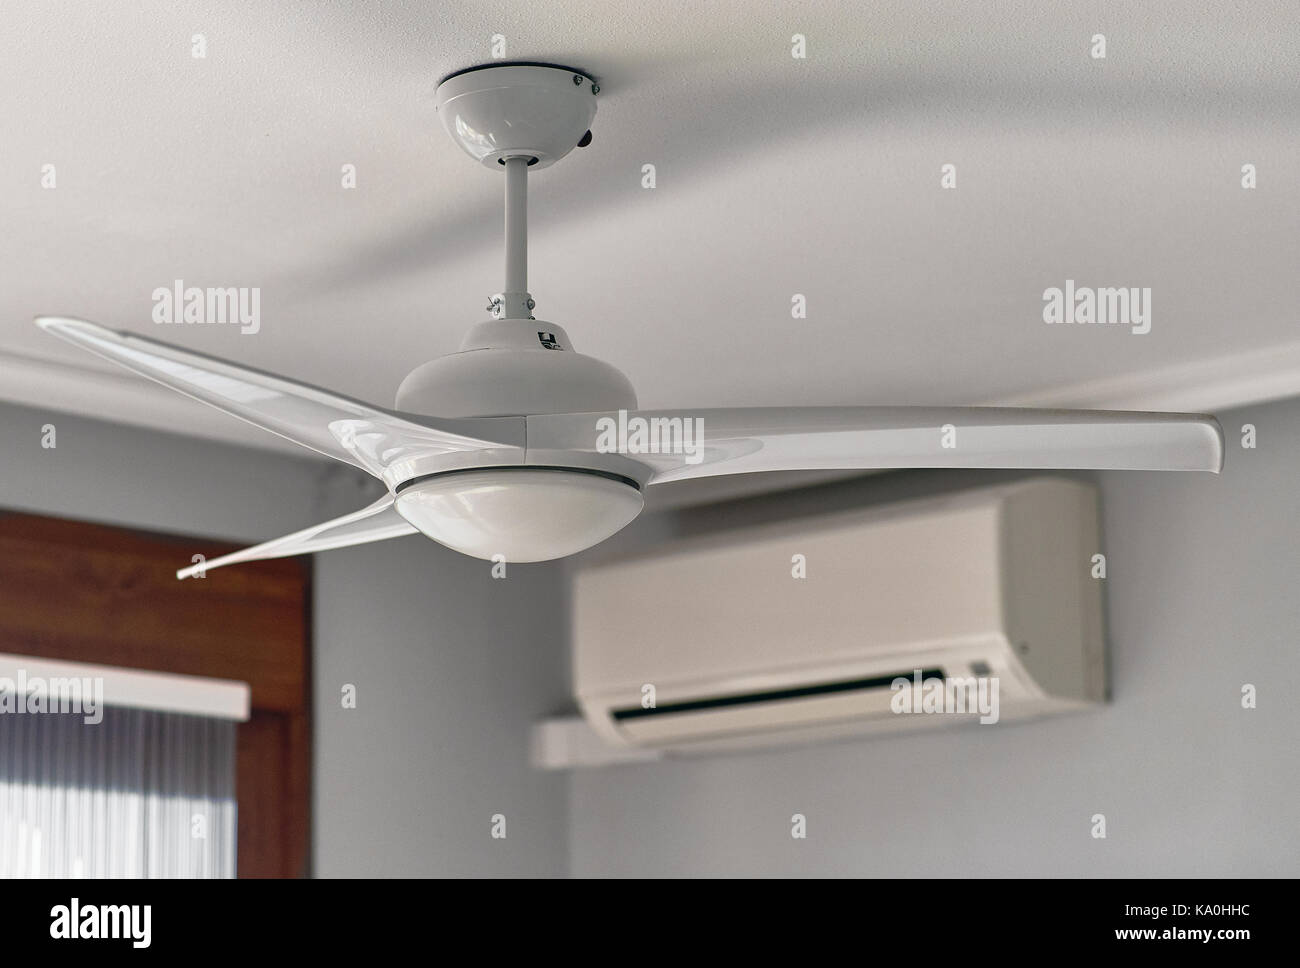 Deckenventilator und Klimaanlage Stockfotografie - Alamy